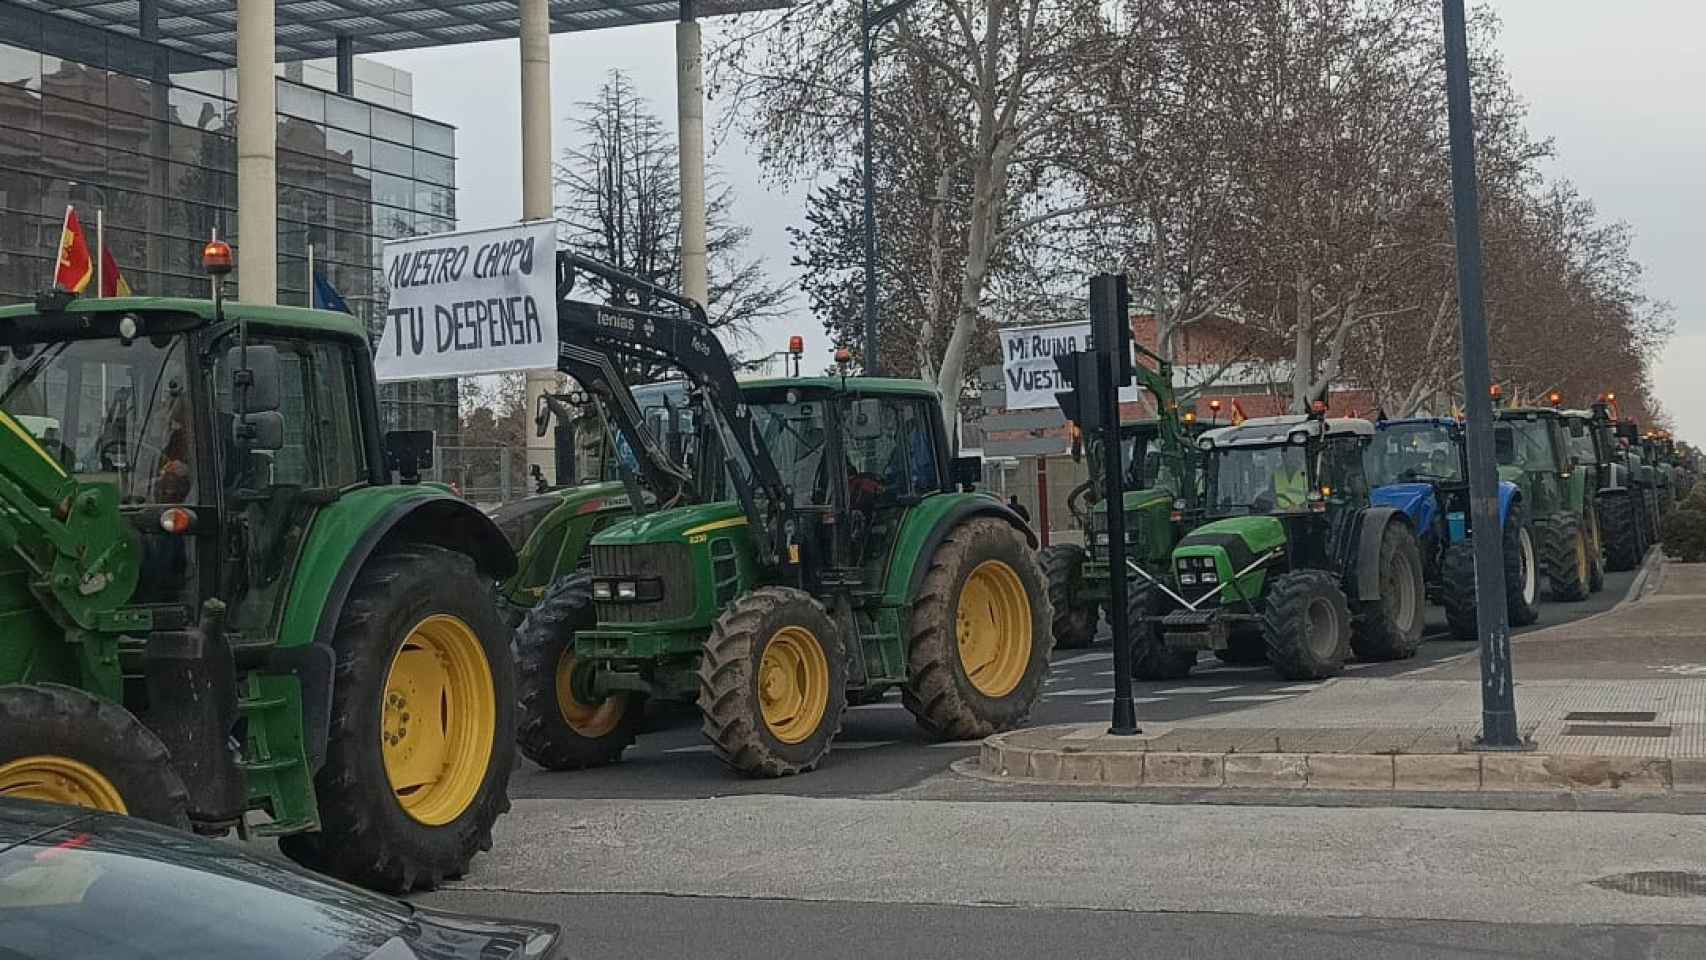 Los agricultores toman las calles de Albacete: Mi ruina es vuestra hambre